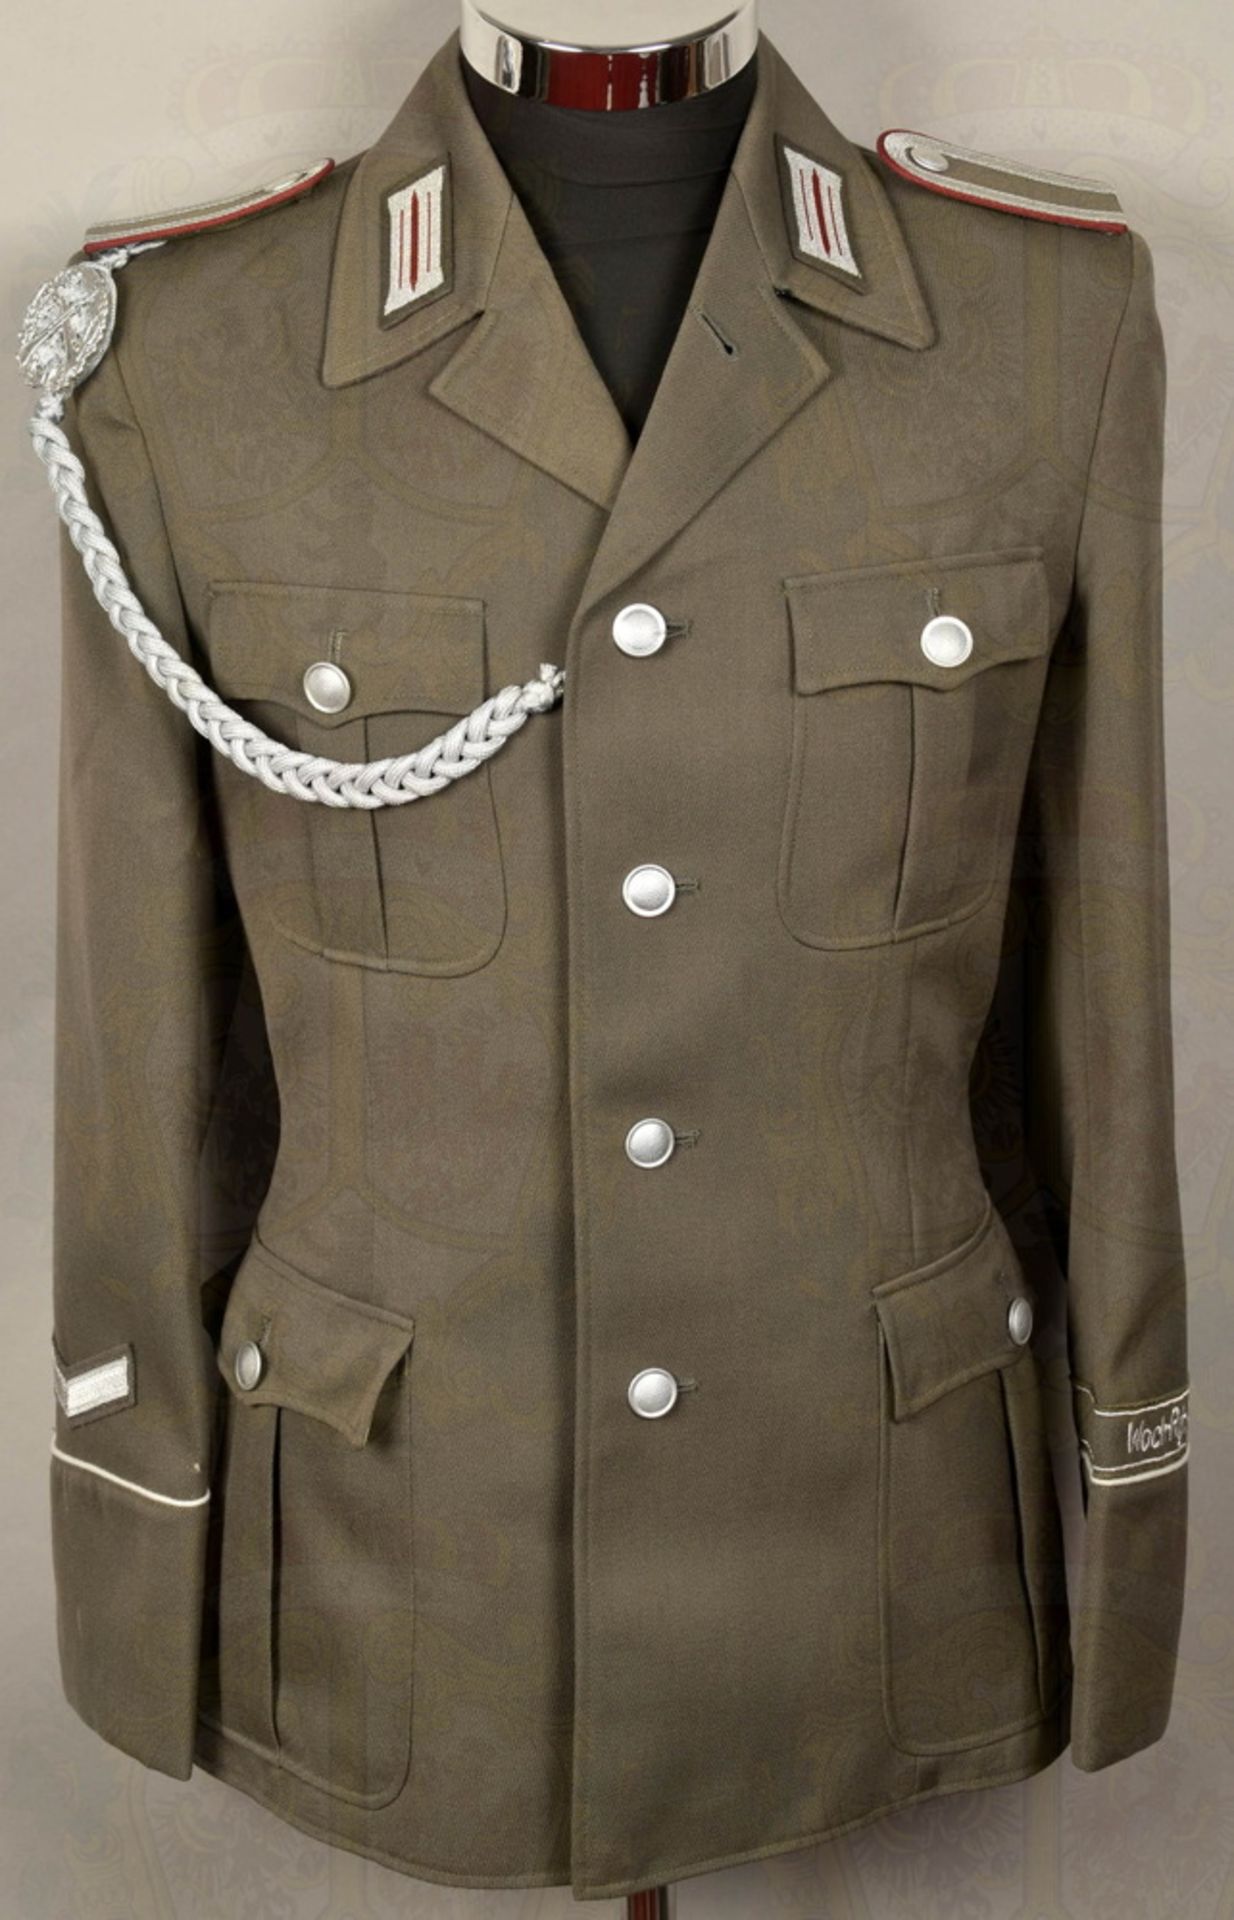 Uniform Unteroffizier der Staatssicherheit - Image 3 of 6